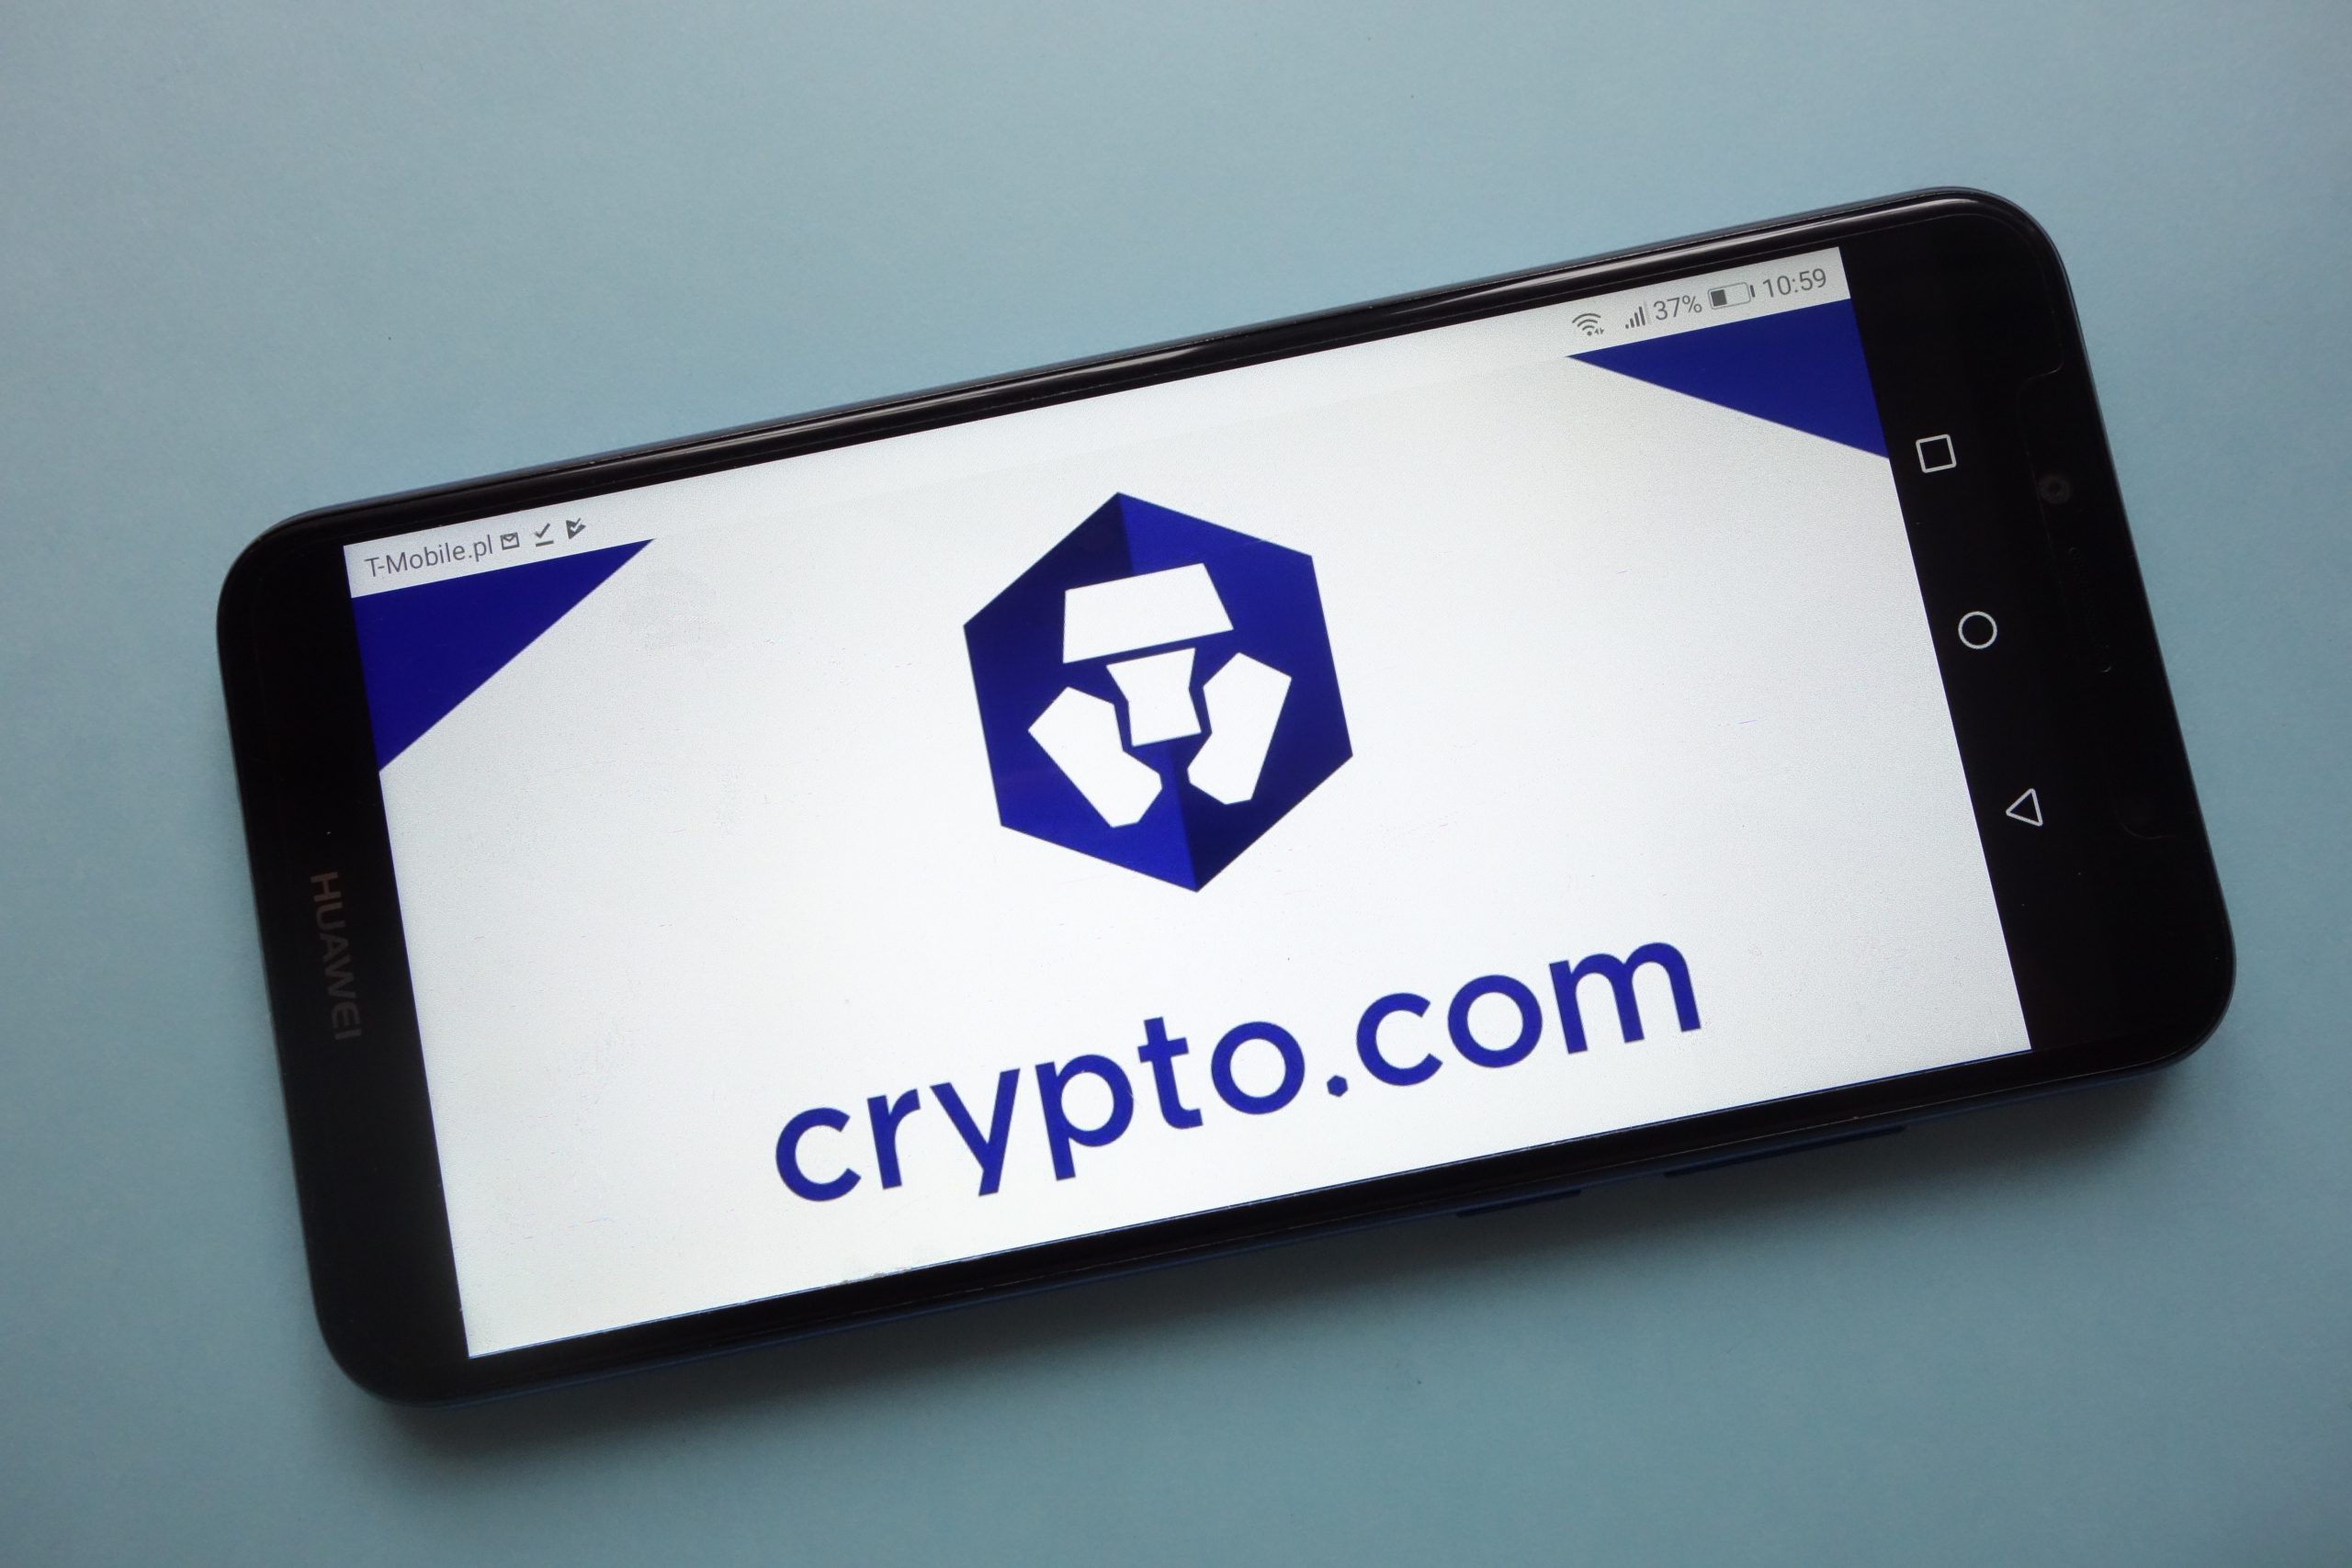 Crypto.com Expands in South Korea
